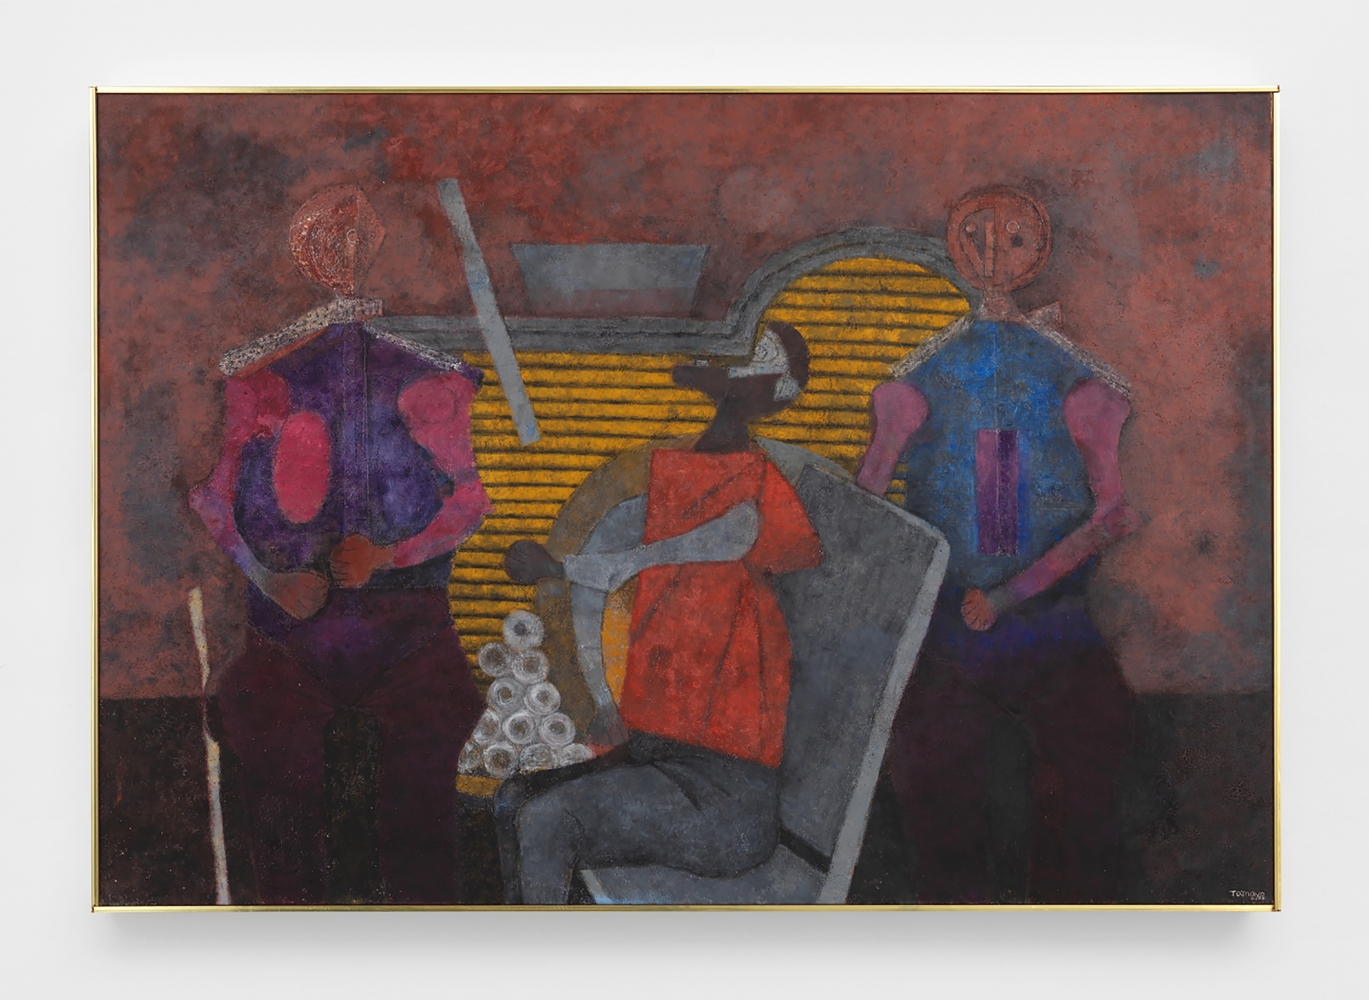 Tres personajes,&amp;nbsp;1985

oil on canvas&amp;nbsp;
49 1/4 x 71 in. / 125.1 x 180.3 cm&amp;nbsp;